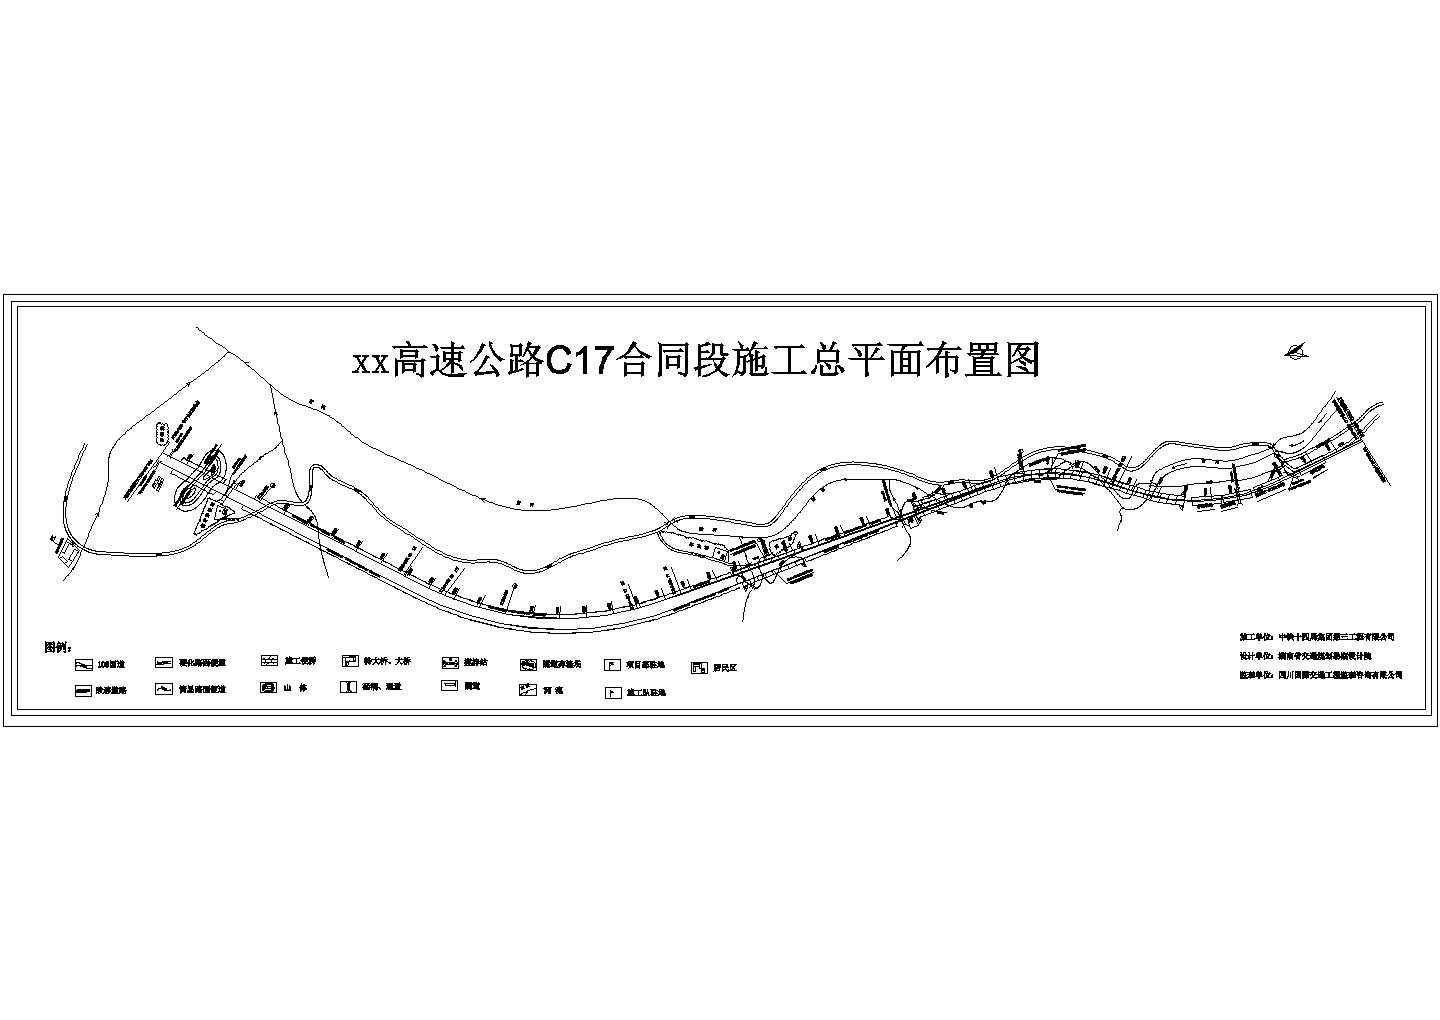 雅泸高速C17合同段施工总平面布置图